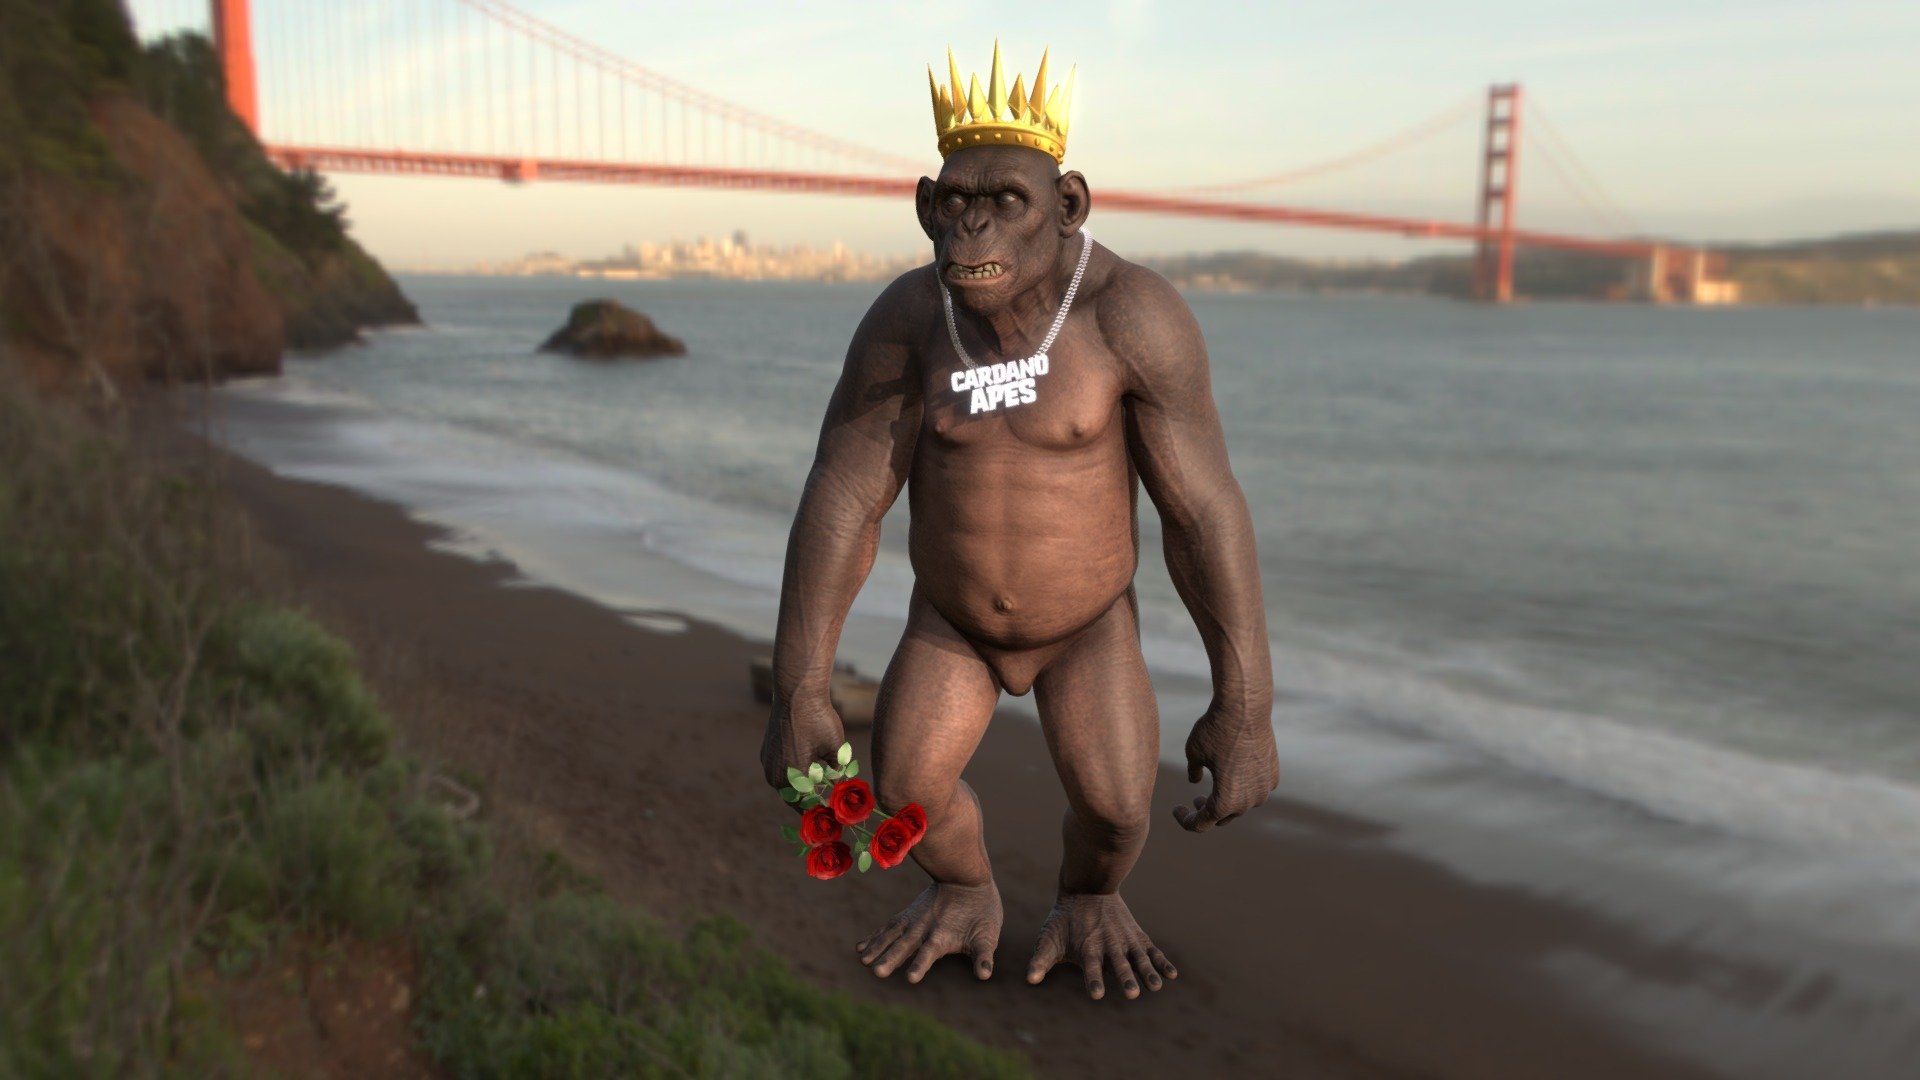 ape strong - 3D model by dino-design 3d model